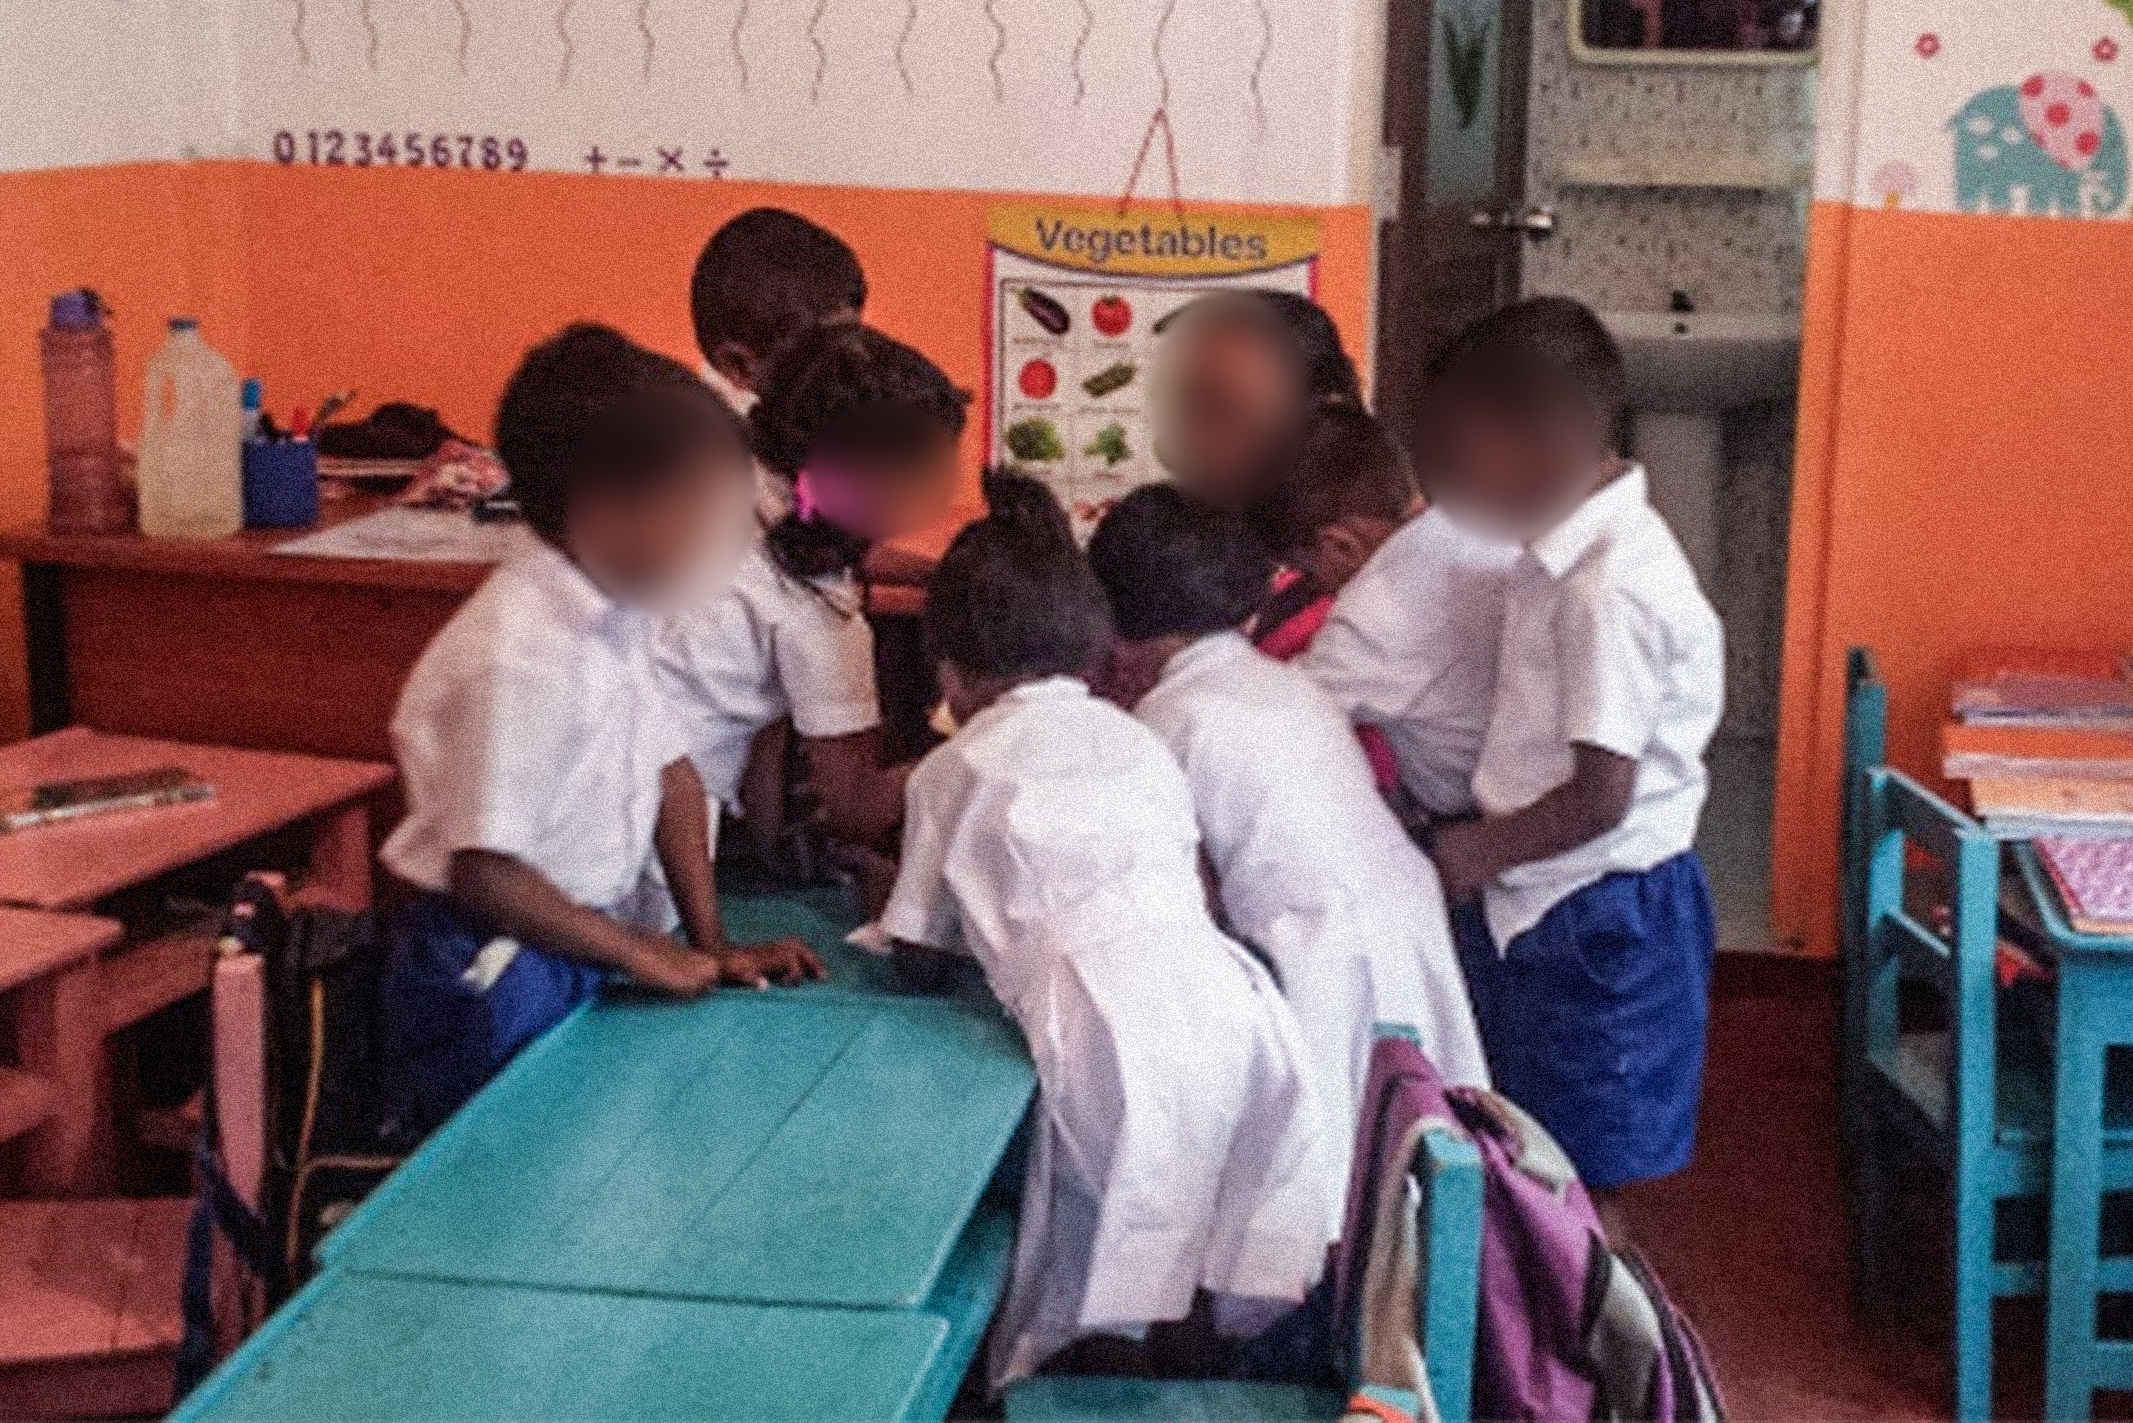 Sri Lankan children wearing their white and blue uniforms at school crowding around their teacher